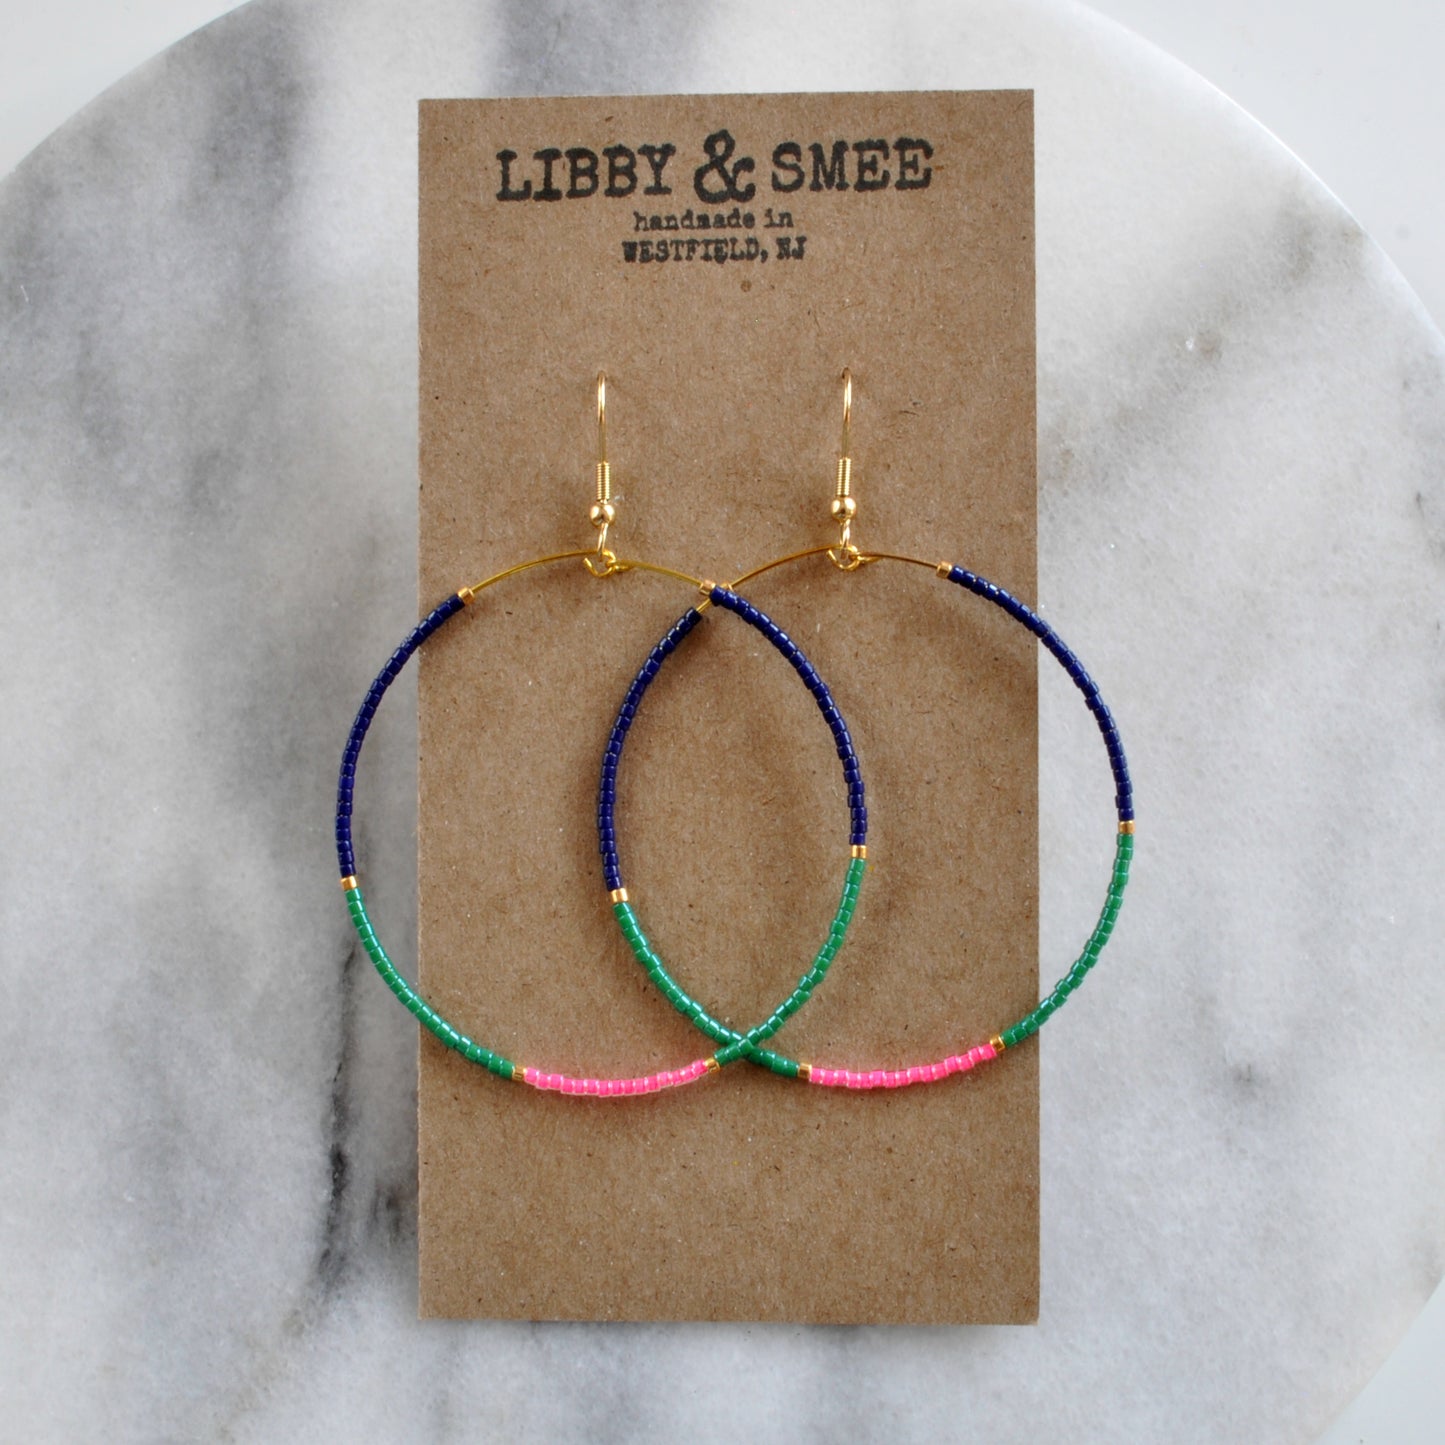 Libby & Smee Large Beaded Hoop Earrings